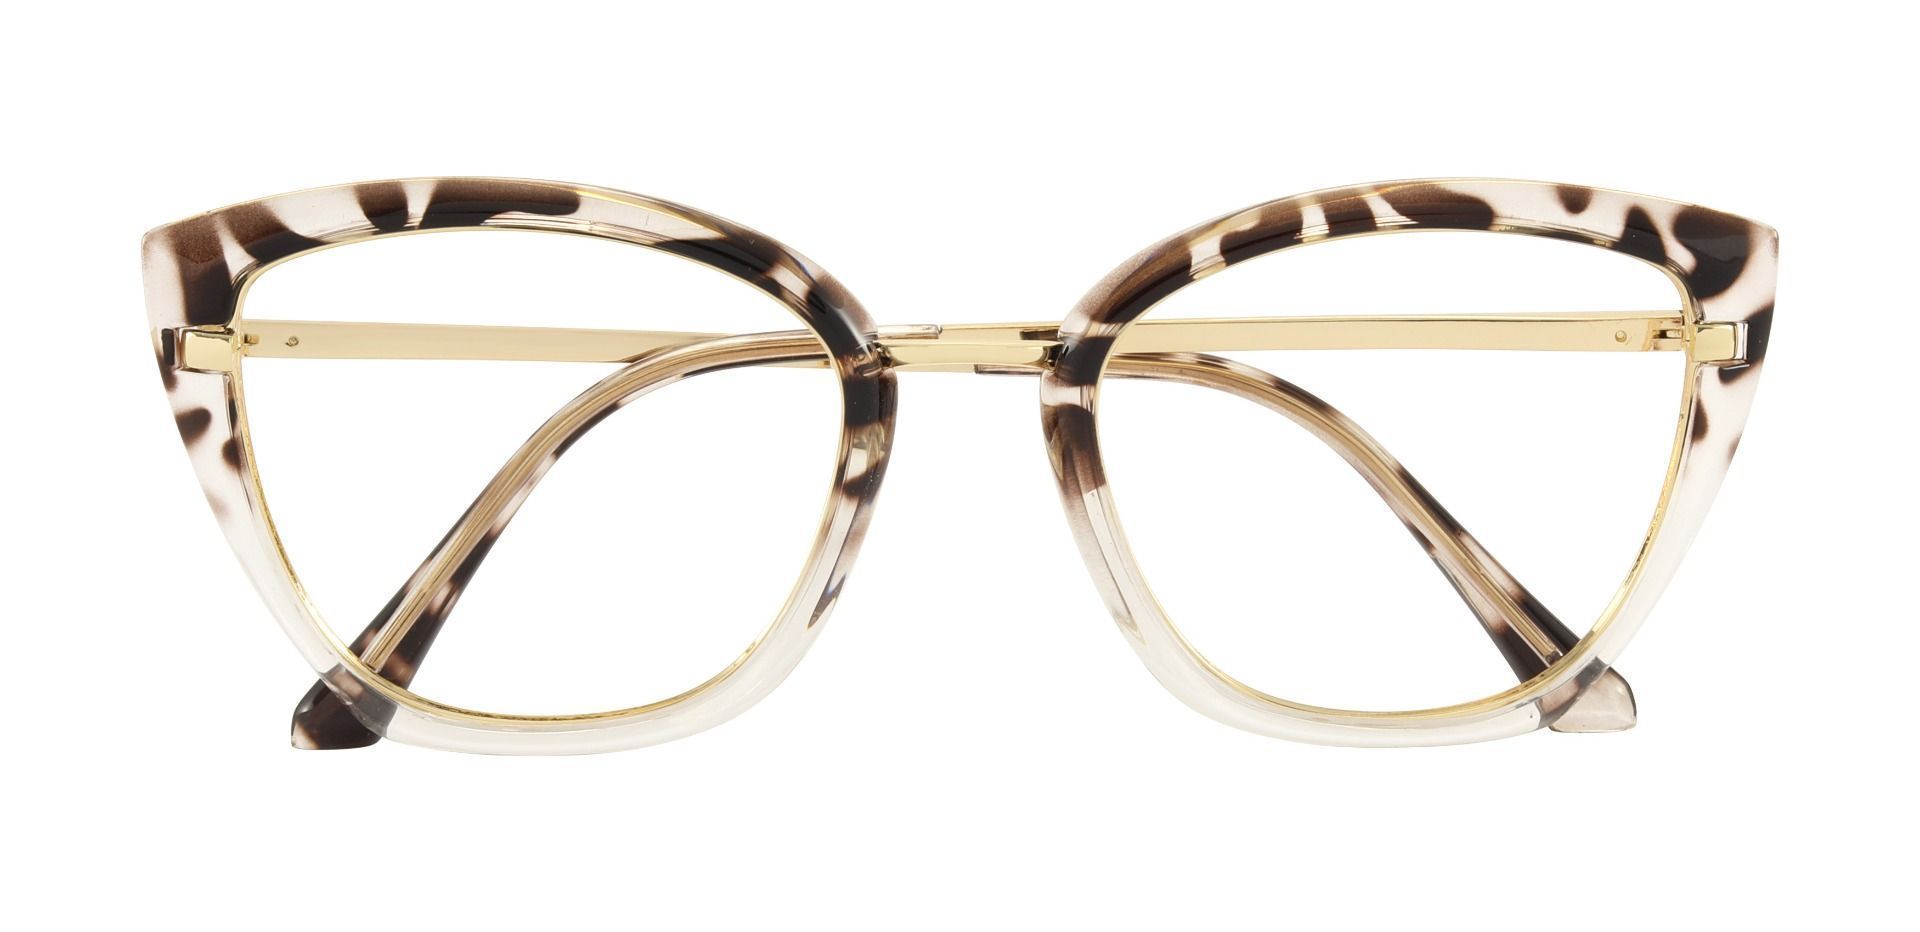 Sarah Cat Eye Prescription Glasses - Tortoise